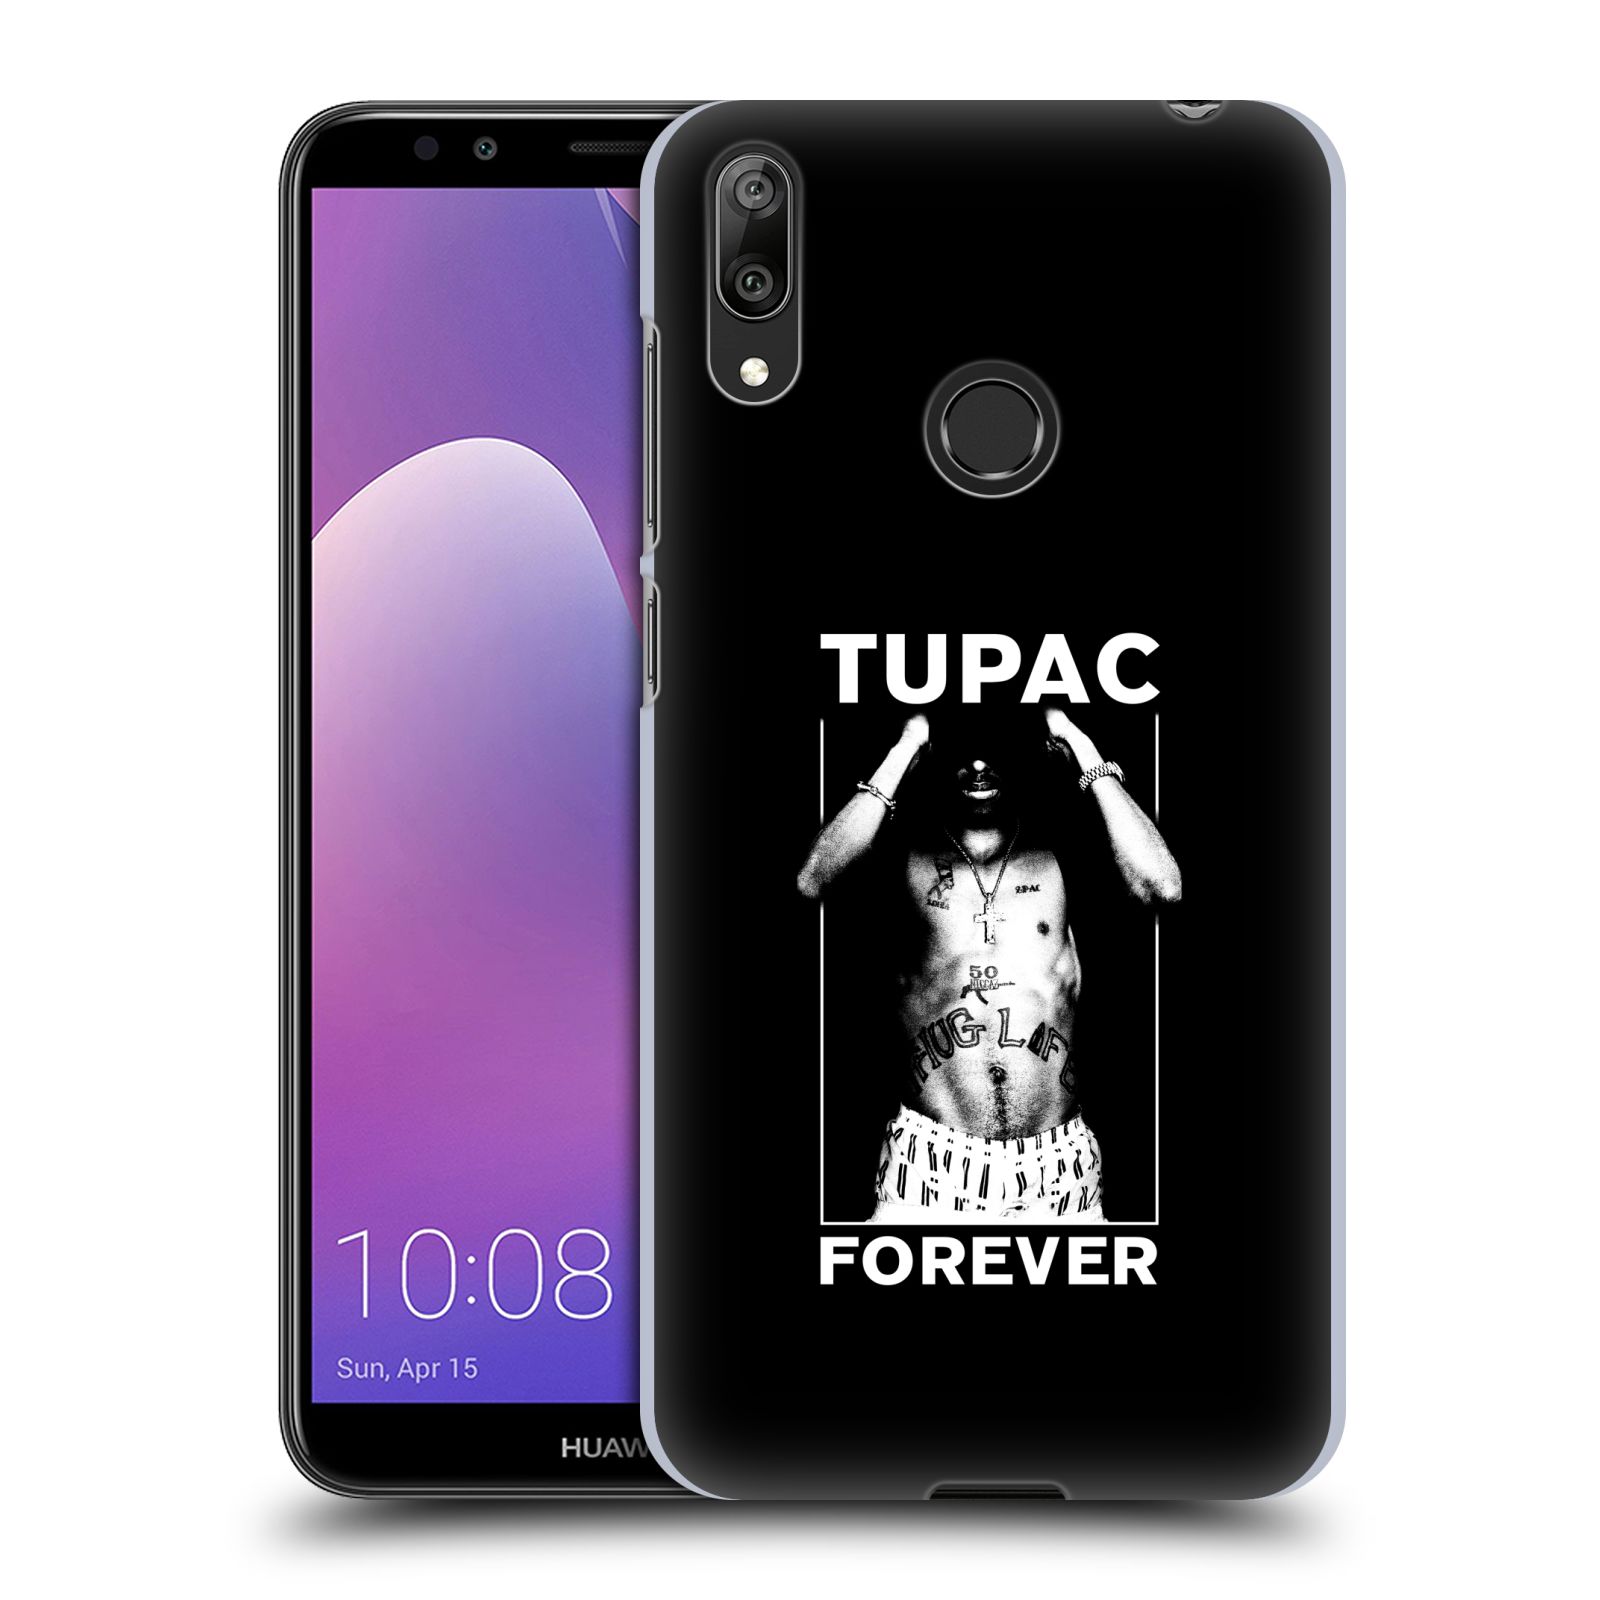 Pouzdro na mobil Huawei Y7 2019 - Head Case - Zpěvák rapper Tupac Shakur 2Pac bílý popisek FOREVER